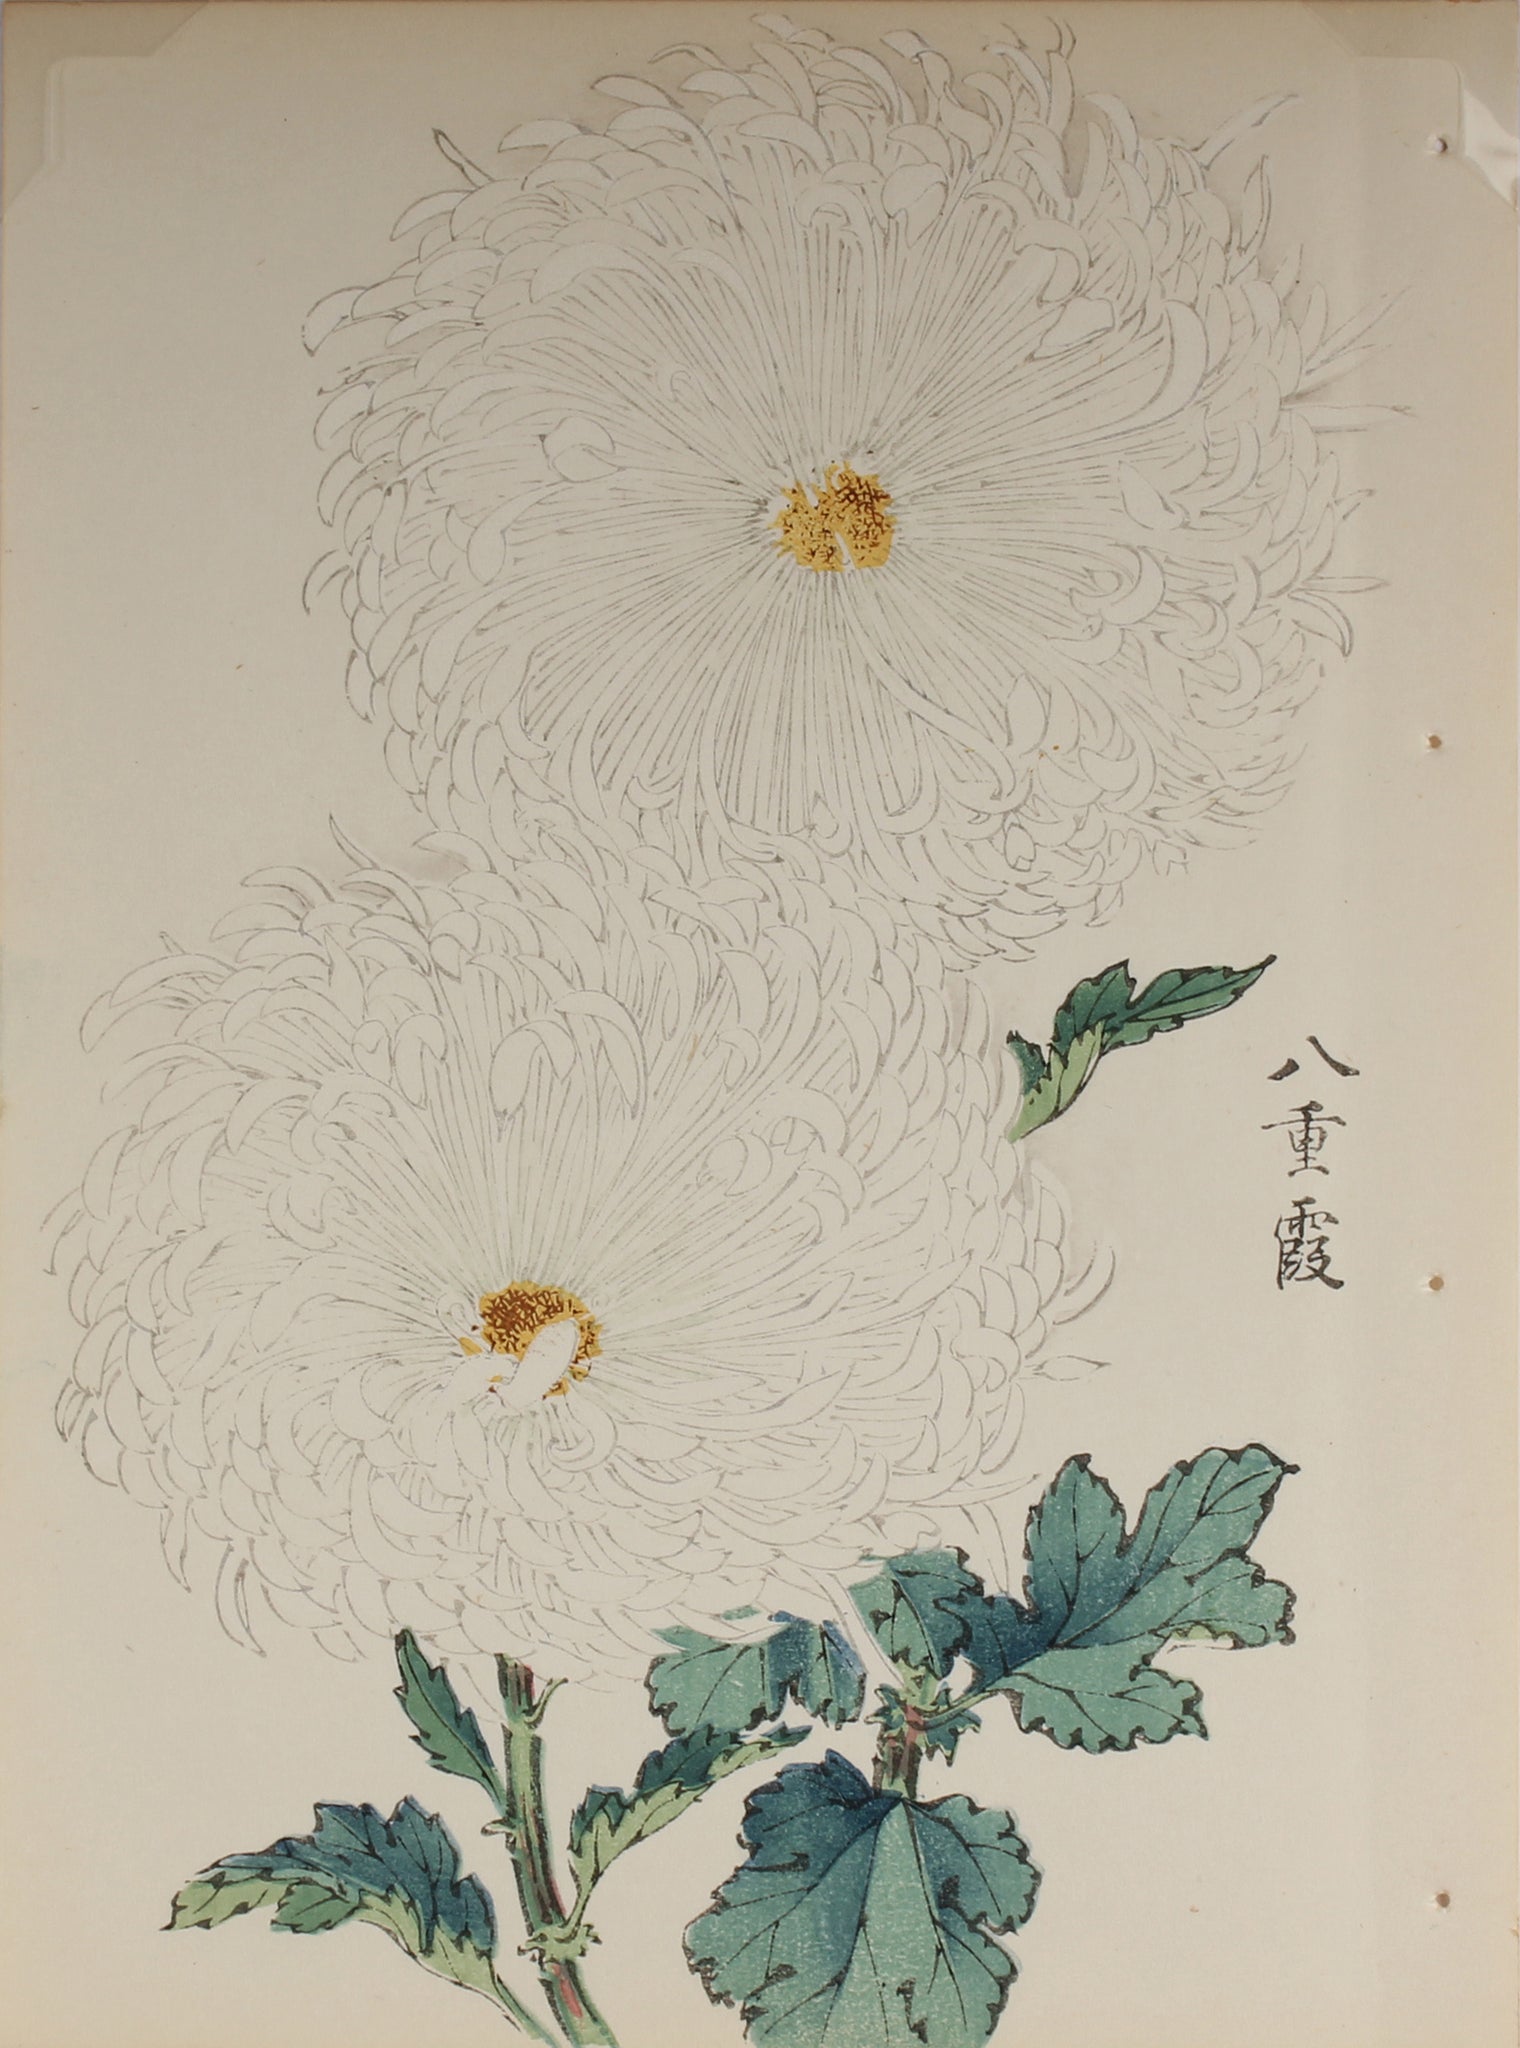 100 chrysanthemums by Keika - p25